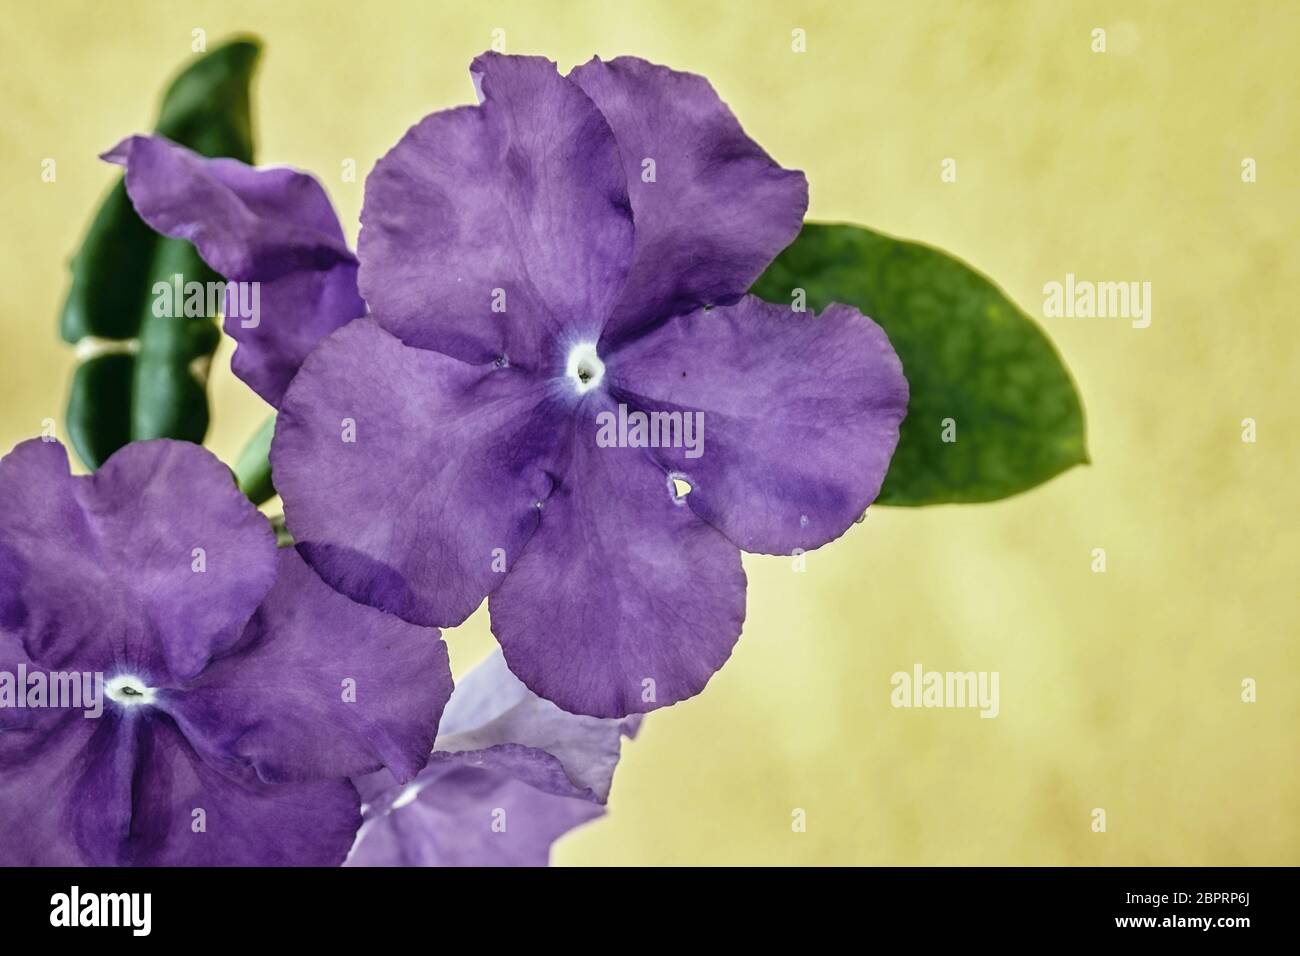 Blauviolett, sehr durchscheinend und zart, fünfblättrige Blüte in Nahaufnahme. Viele Schattierungen mit Struktur der Blüte erkennbar. Im Hintergrund Stockfoto